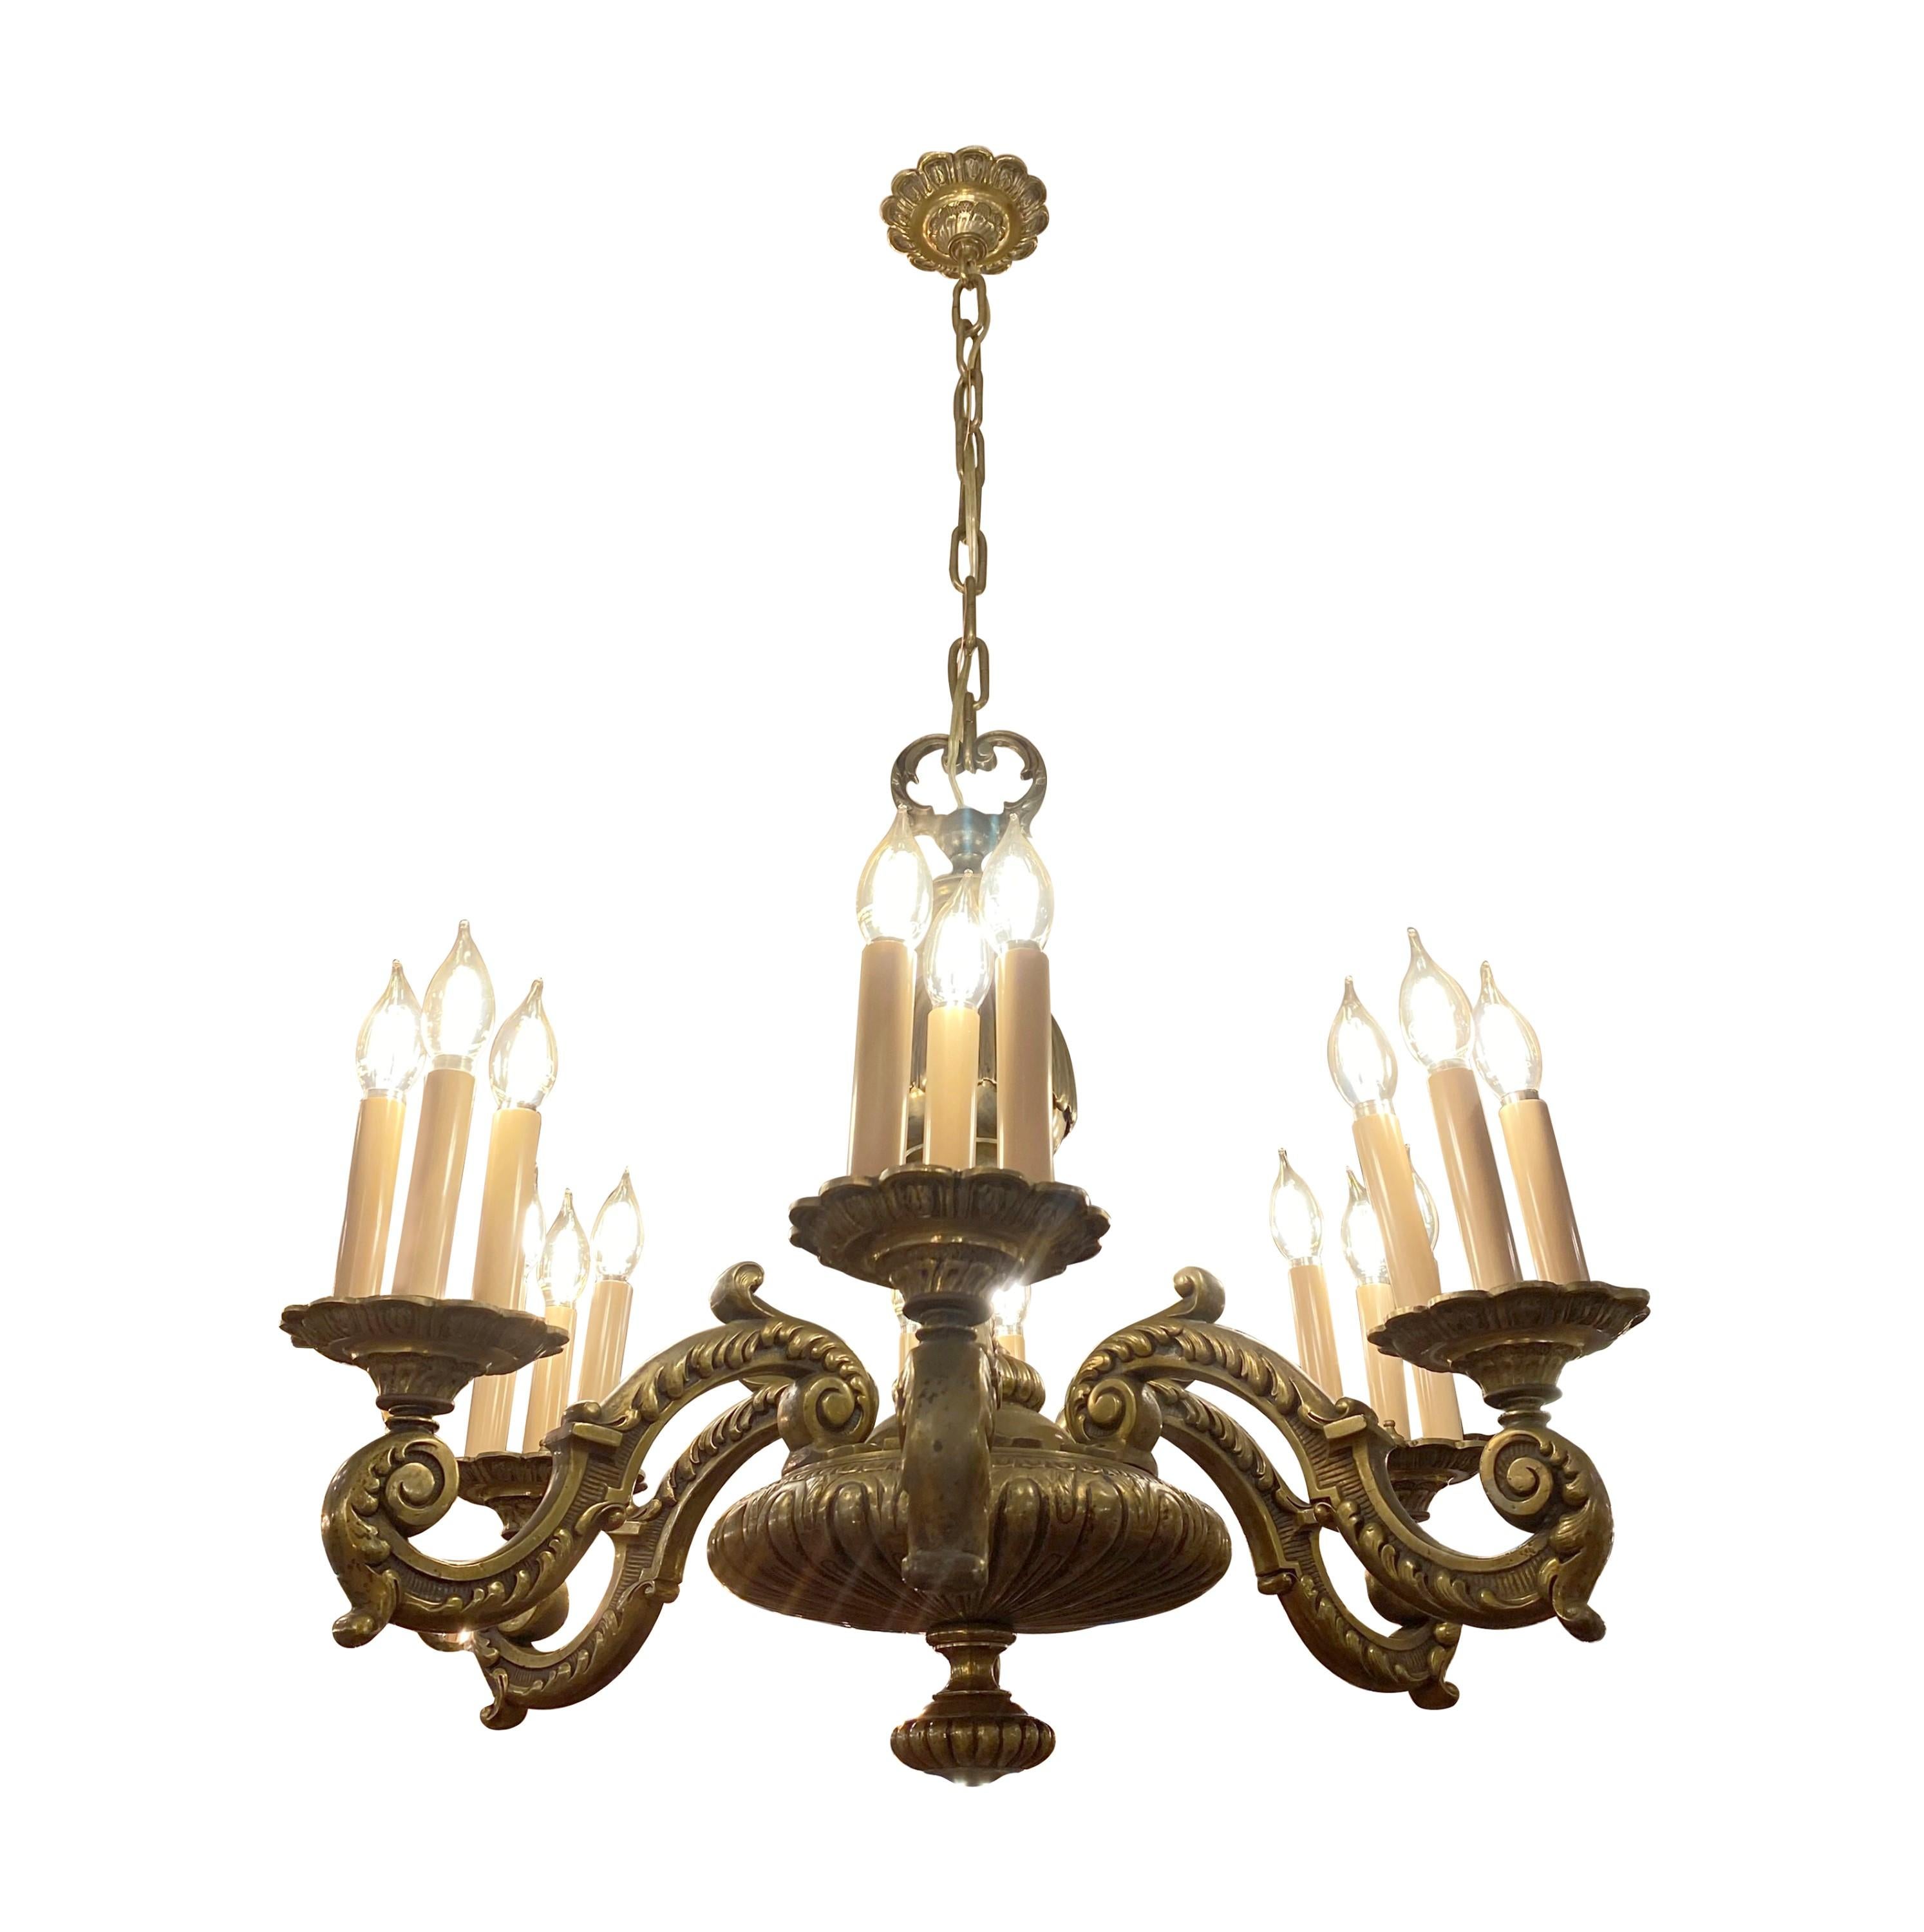 Antiker Bronze-Kronleuchter aus dem frühen 20. Jahrhundert, hergestellt in Frankreich. Sechs Arme mit je drei Kerzenleuchtern in der Nabe. Für 18 Standard-Kandelaber-Glühbirnen geeignet. Gereinigt und restauriert. Bitte beachten Sie, dass sich